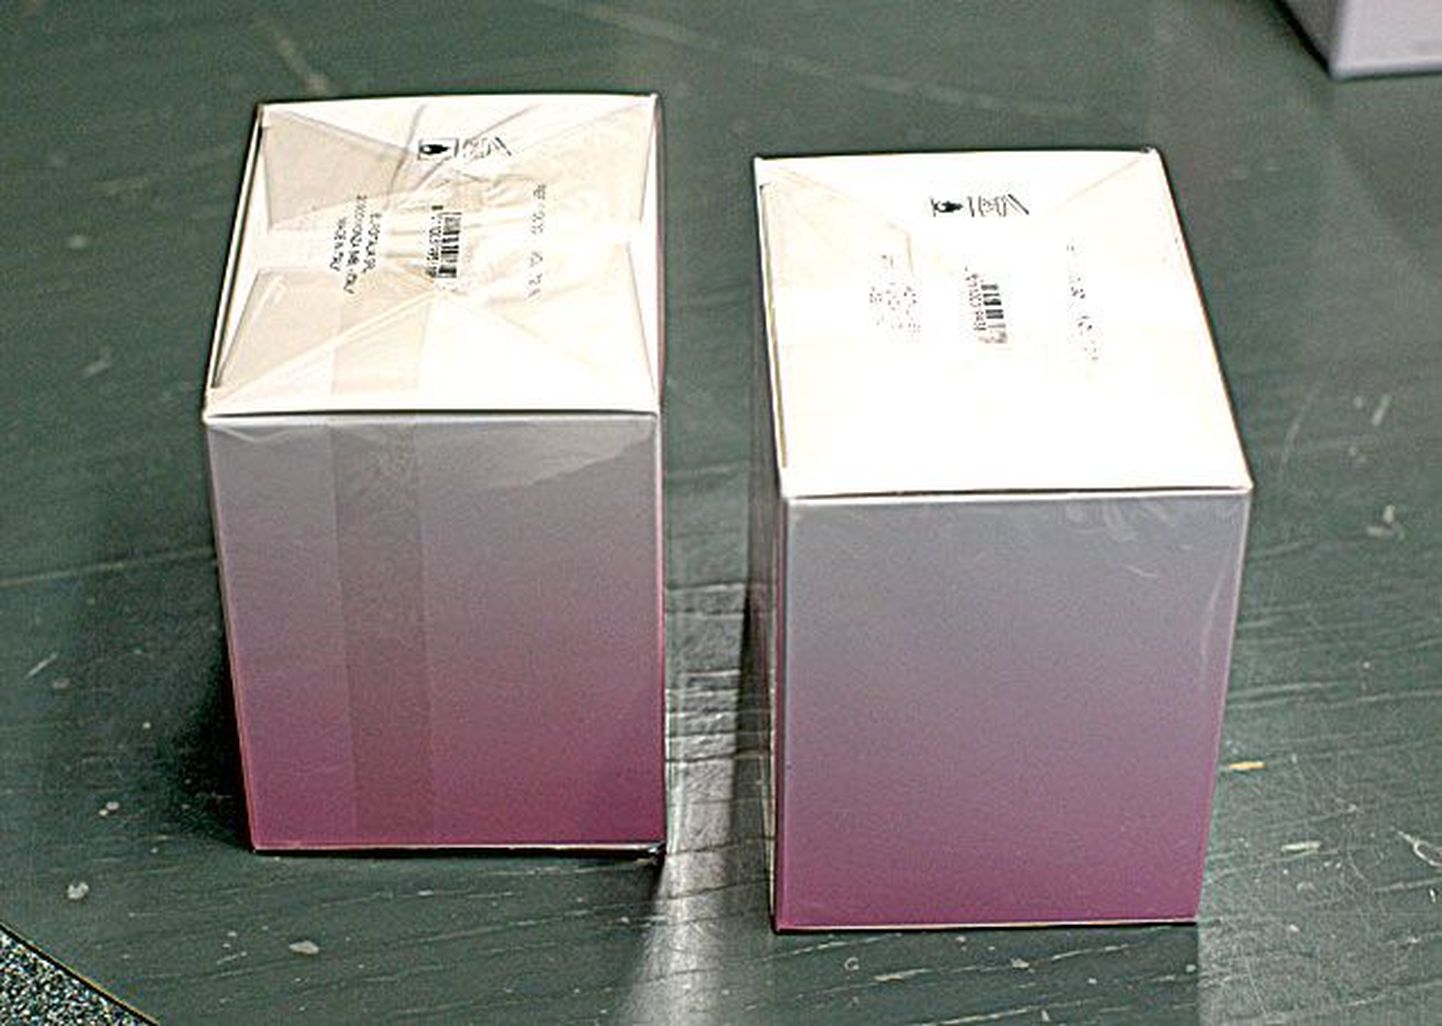 Вскрытая упаковка: место соединения пленки слишком широкое, пленка облегает упаковку не так плотно, как оригинальную упаковку.